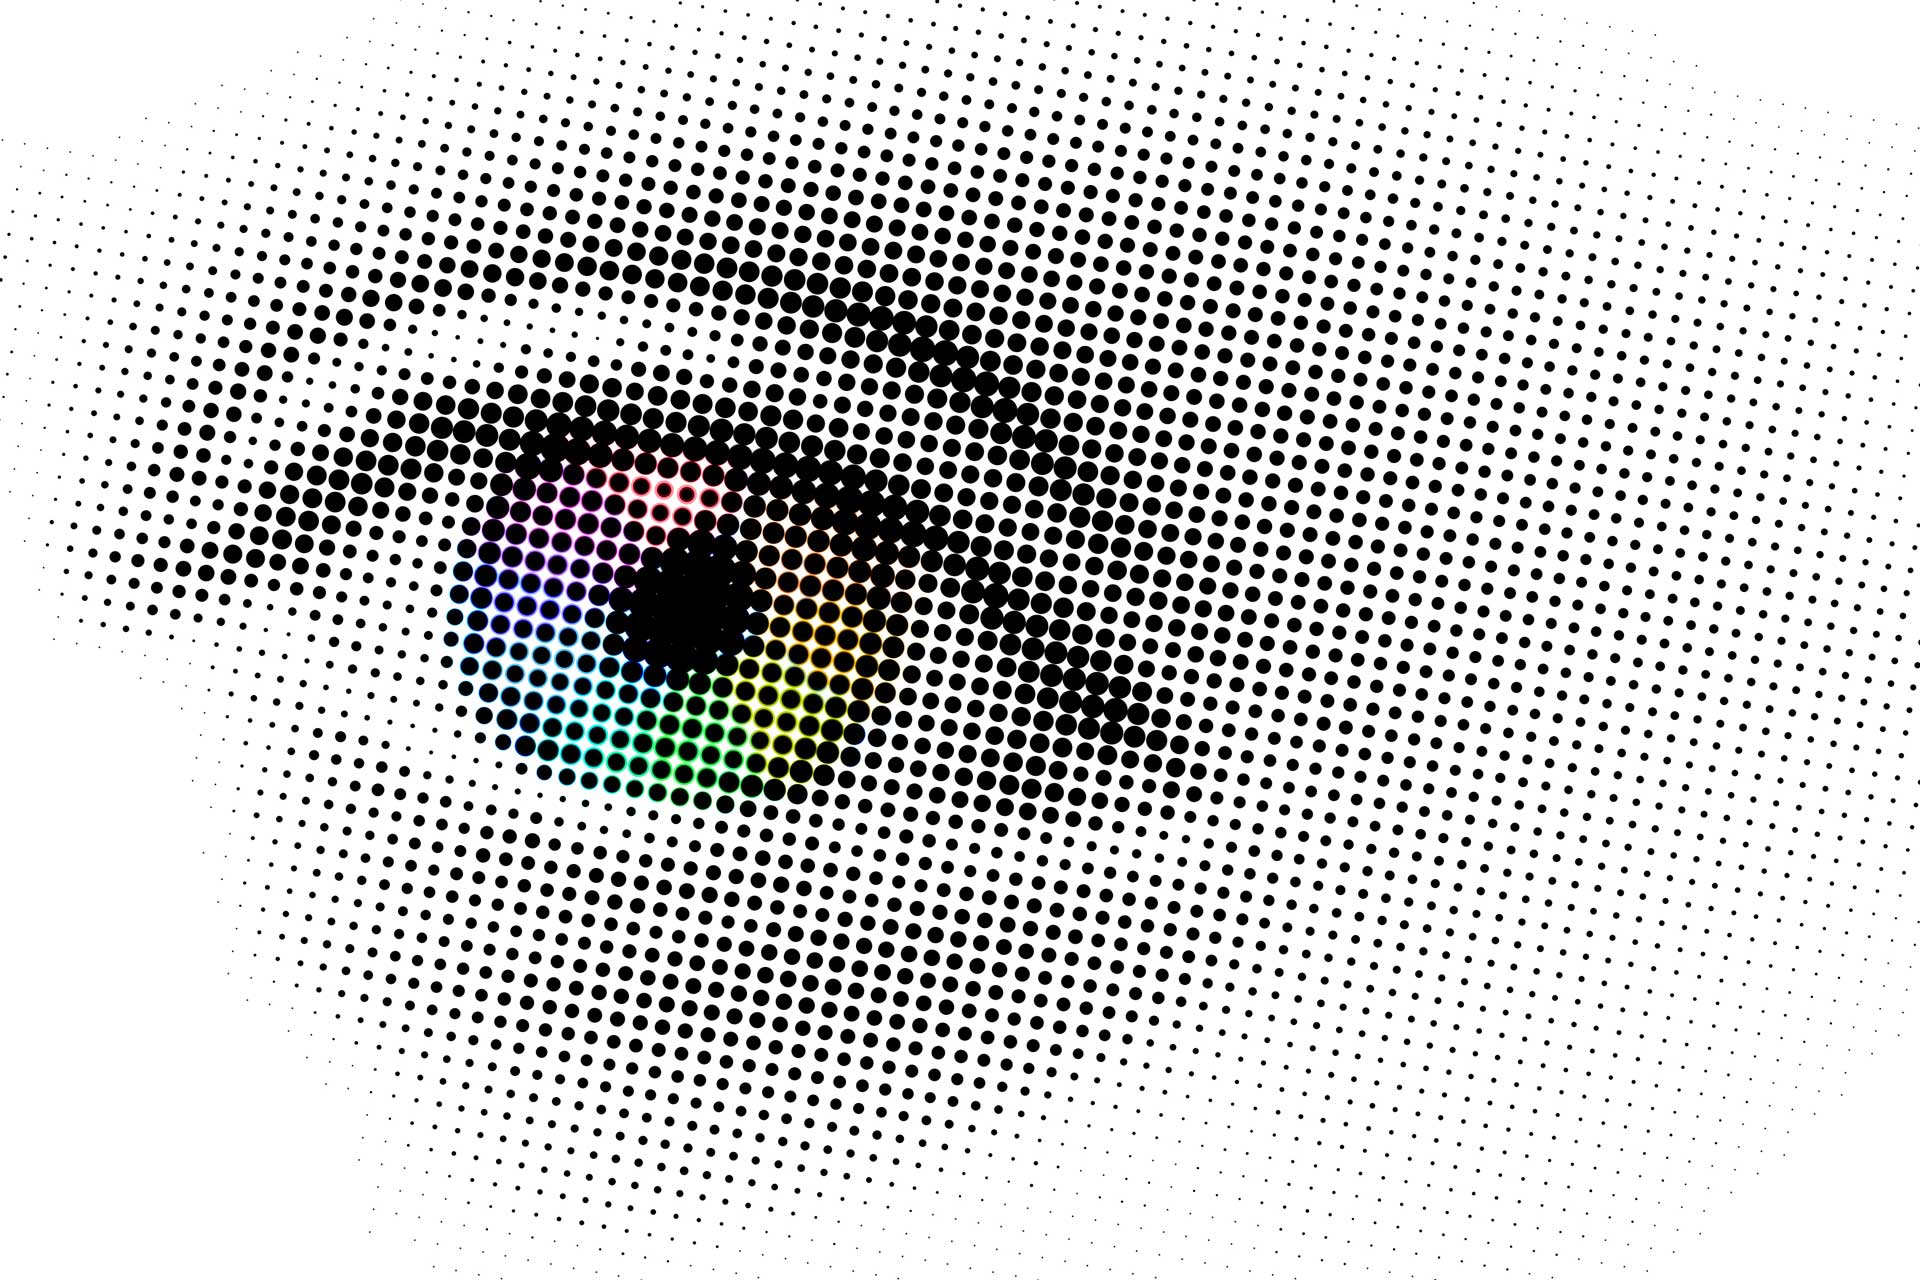 Druckprofi - Digidruck | wh-medien-digitaldruck | c pixabay